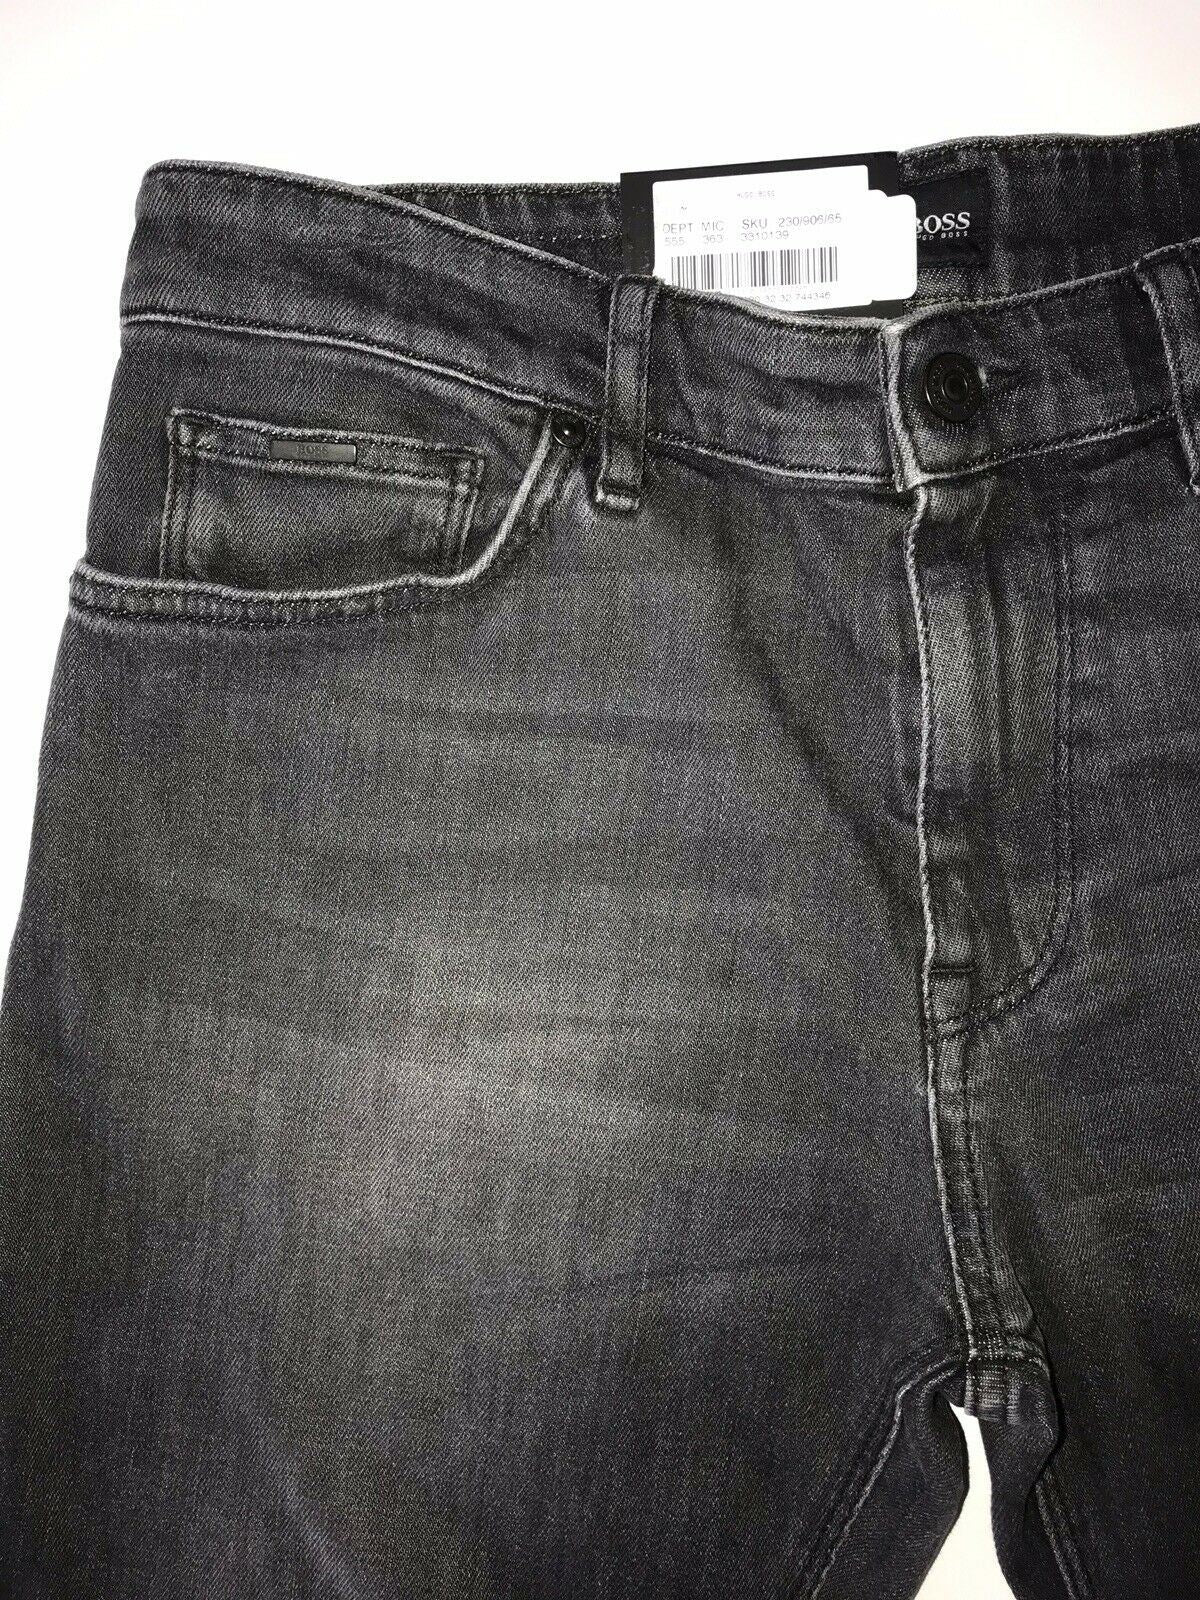 Neu mit Etikett: 178 $ Hugo Boss Herren-Jeans „Maine“ in normaler Passform in Blau, Größe 30/32